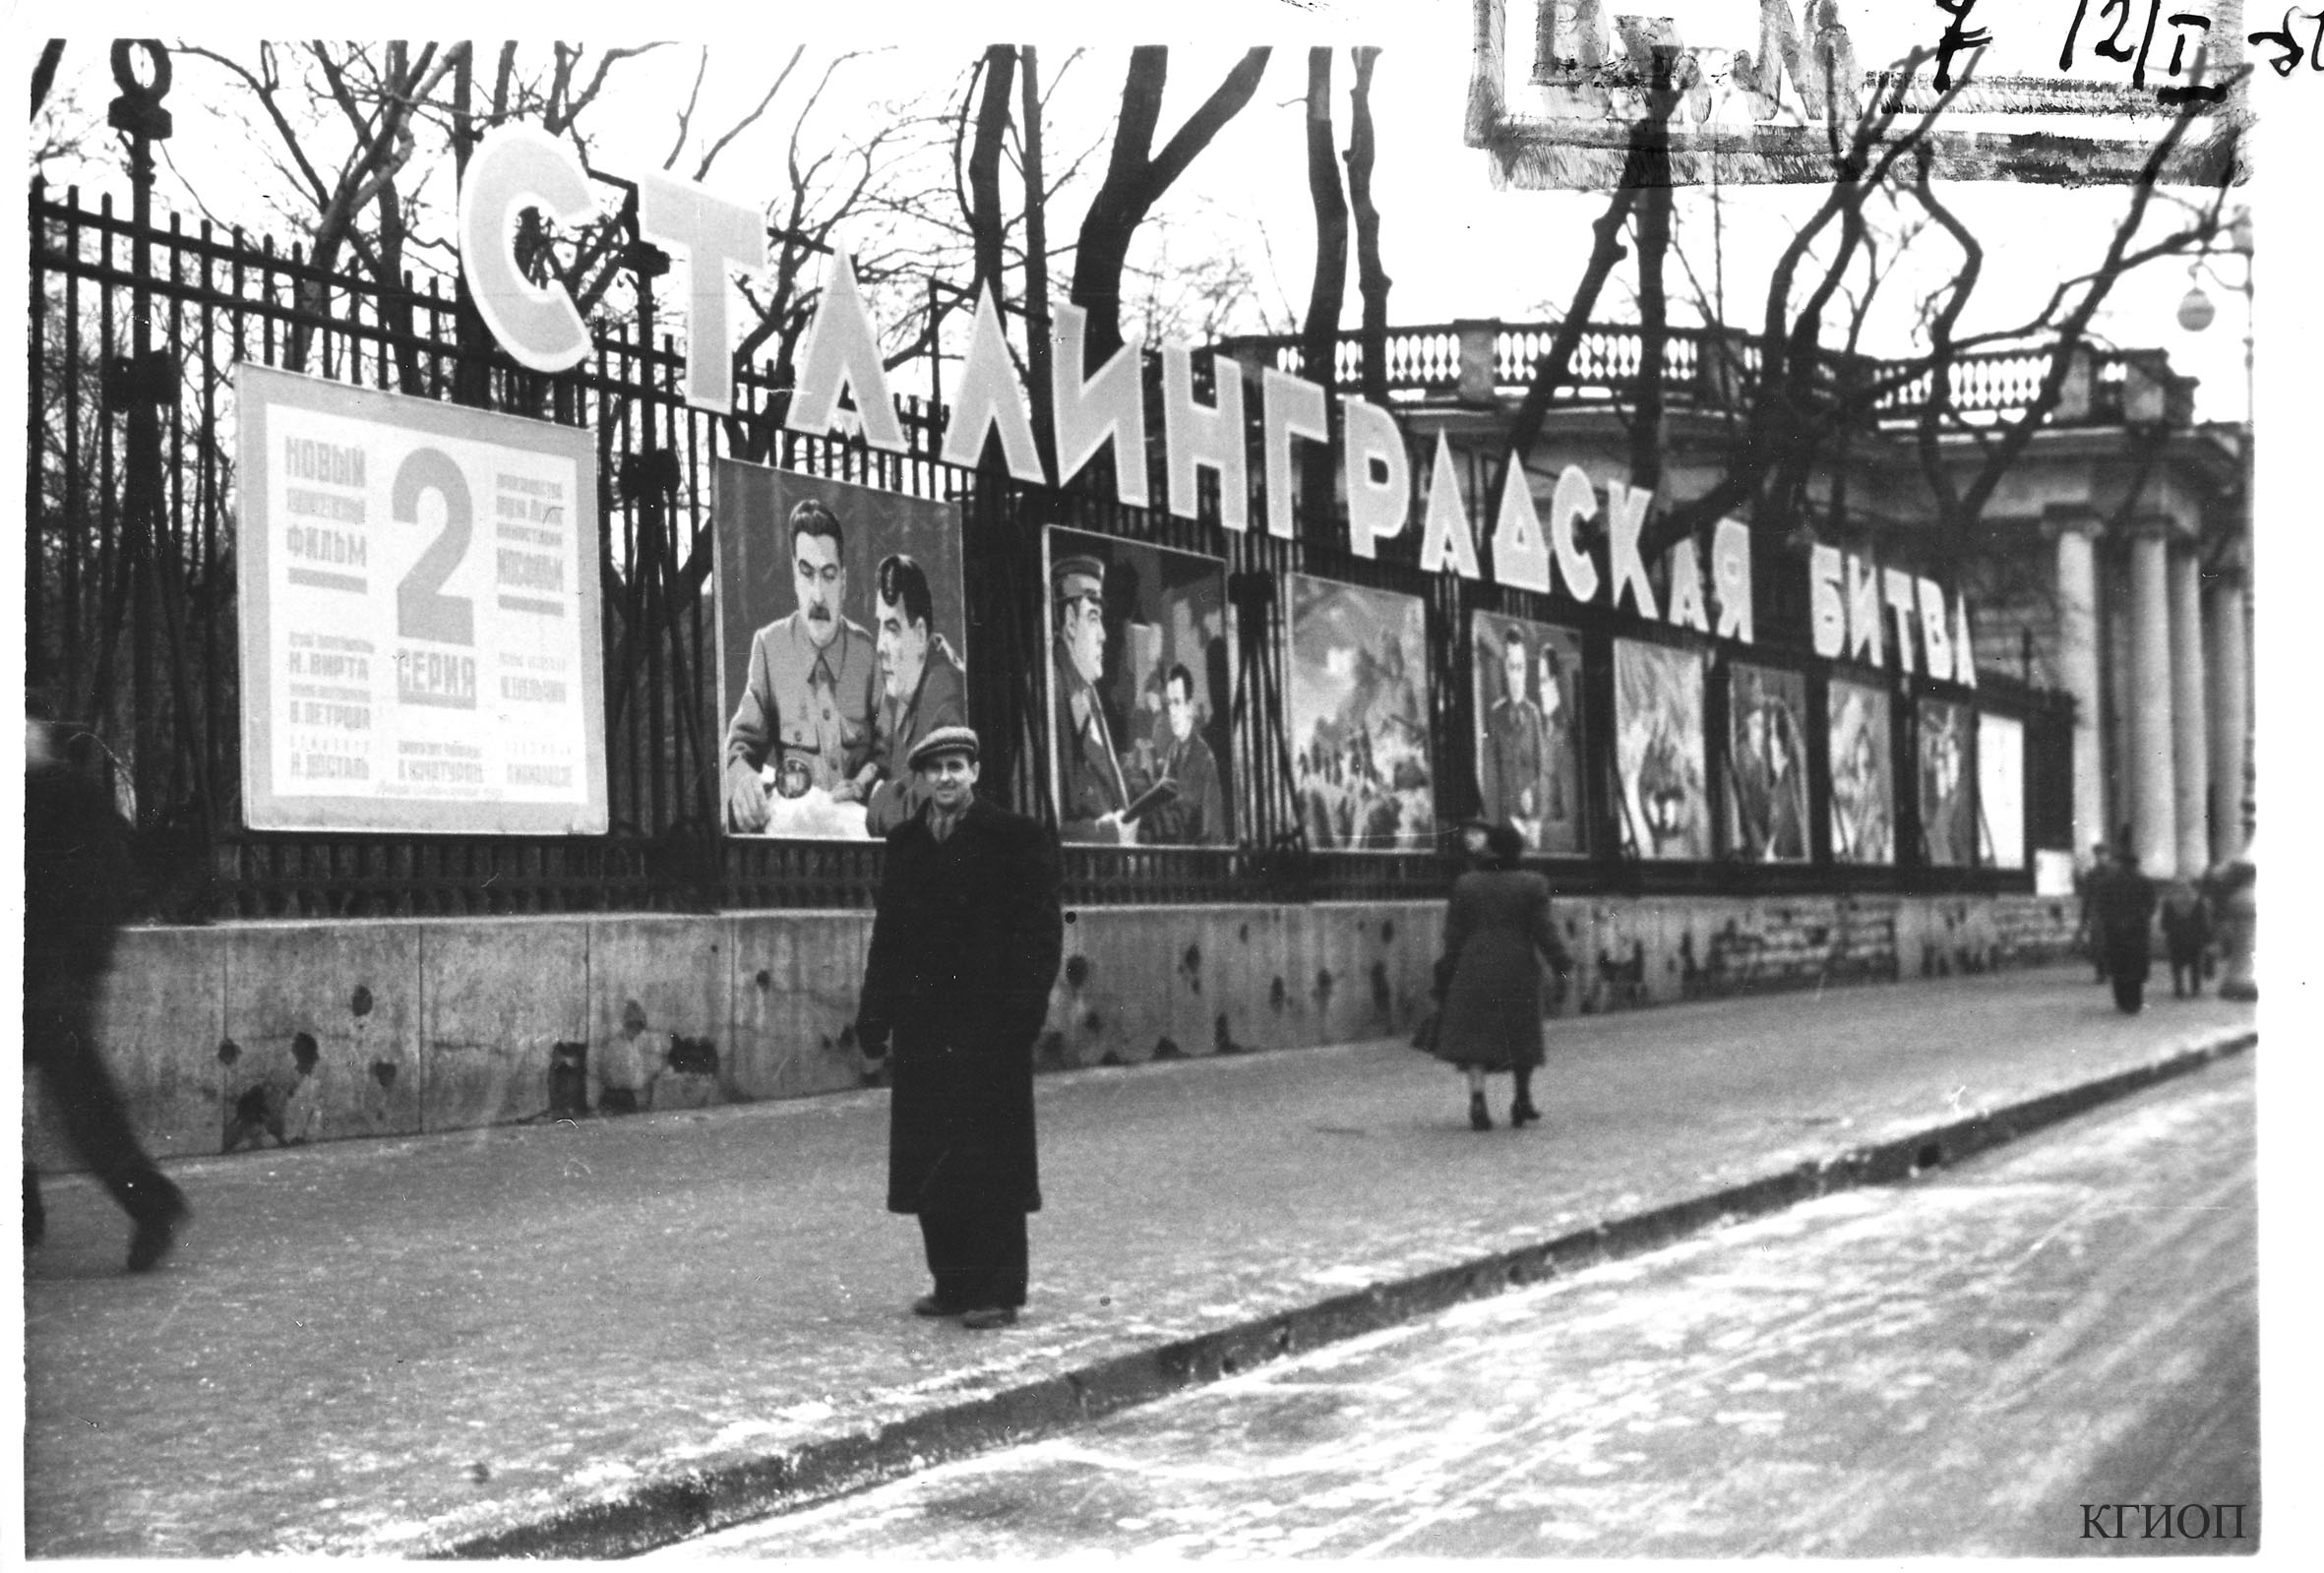 1949. Афиша 2-й серии художественного фильма «Сталинградская битва» на ограде Аничкова дворца